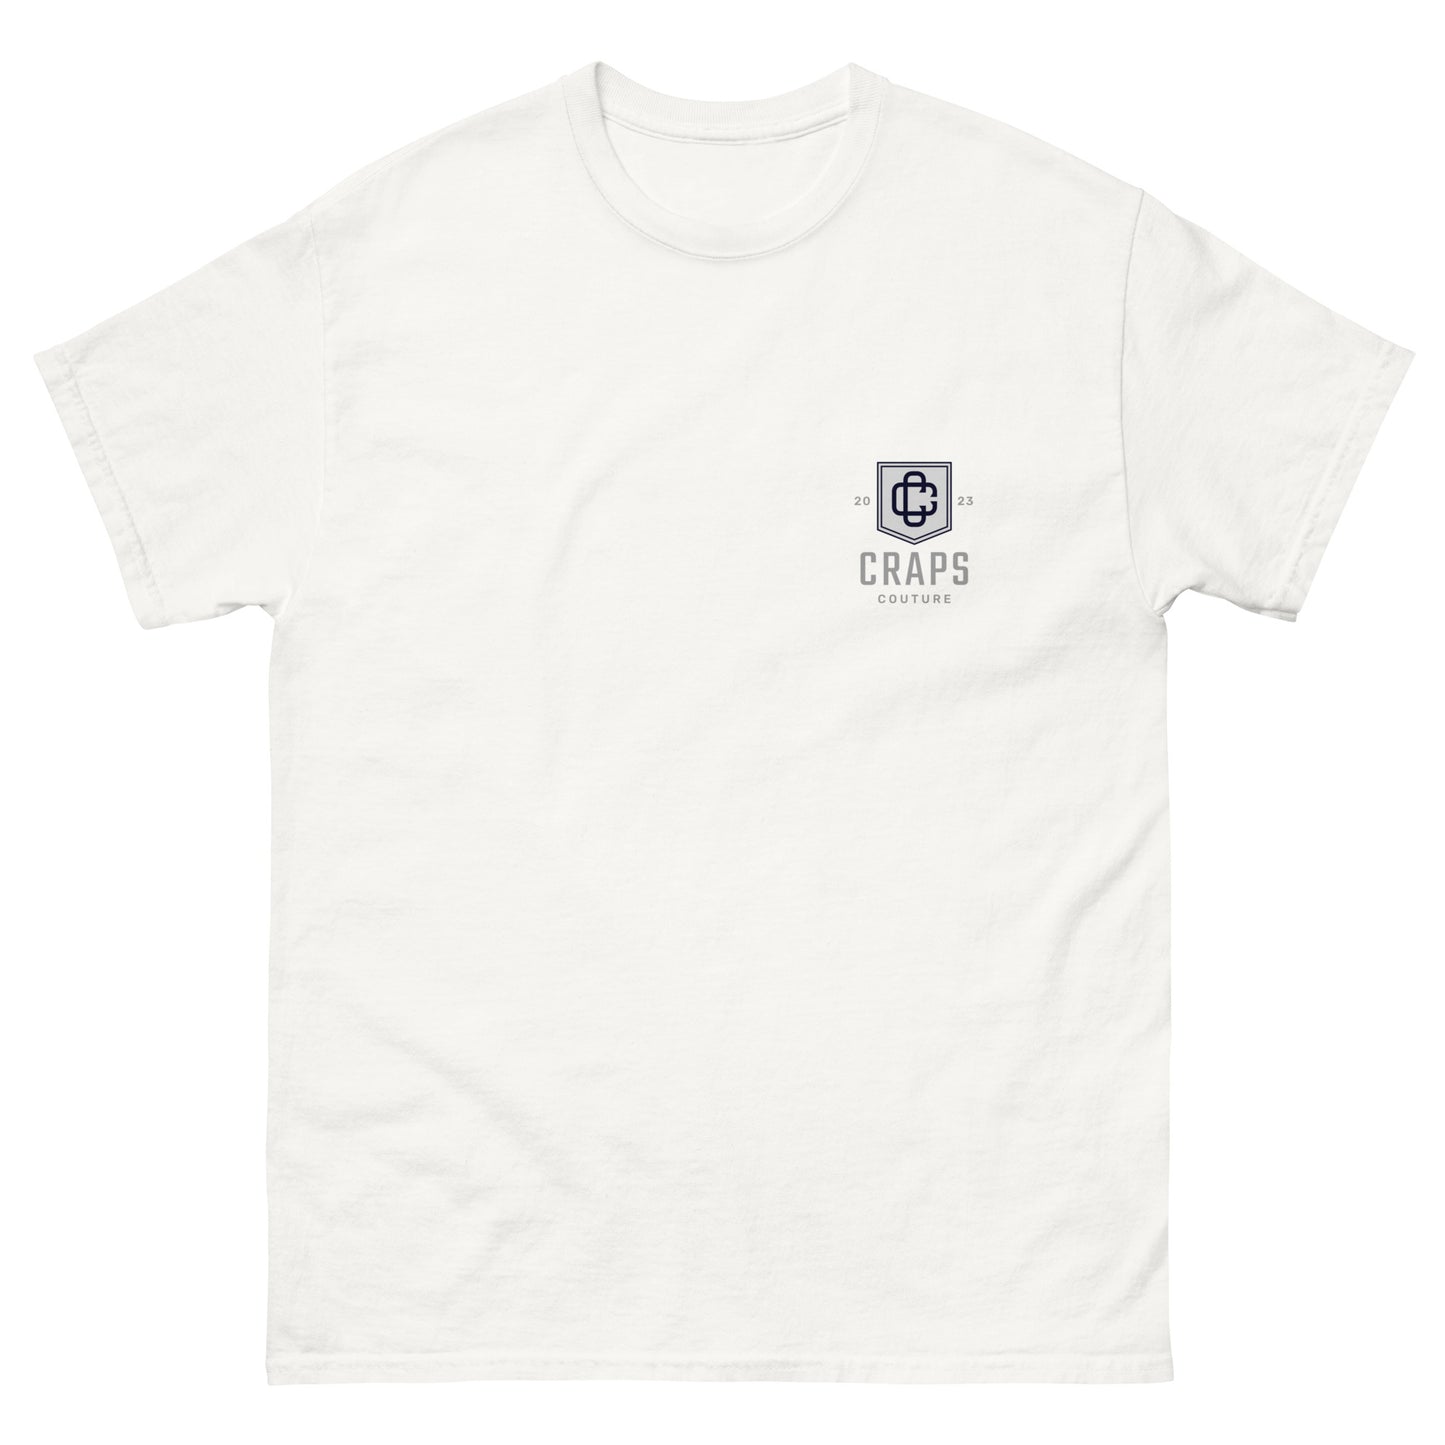 Just Press Dat Faka- White Shirt 2.0